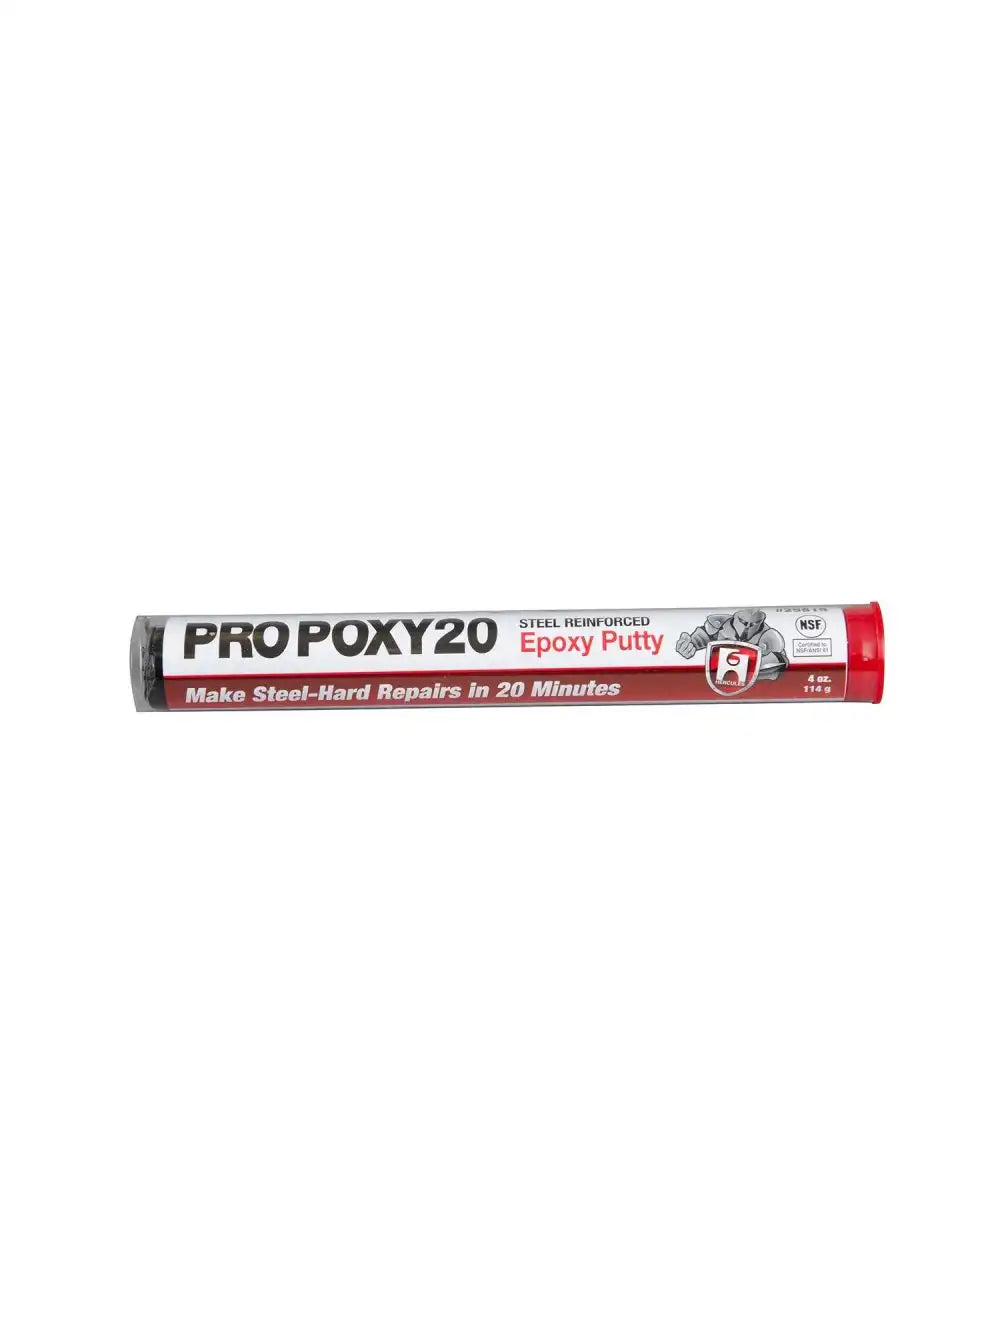 Hercules Pro Poxy 20 4 oz. Epoxy Putty